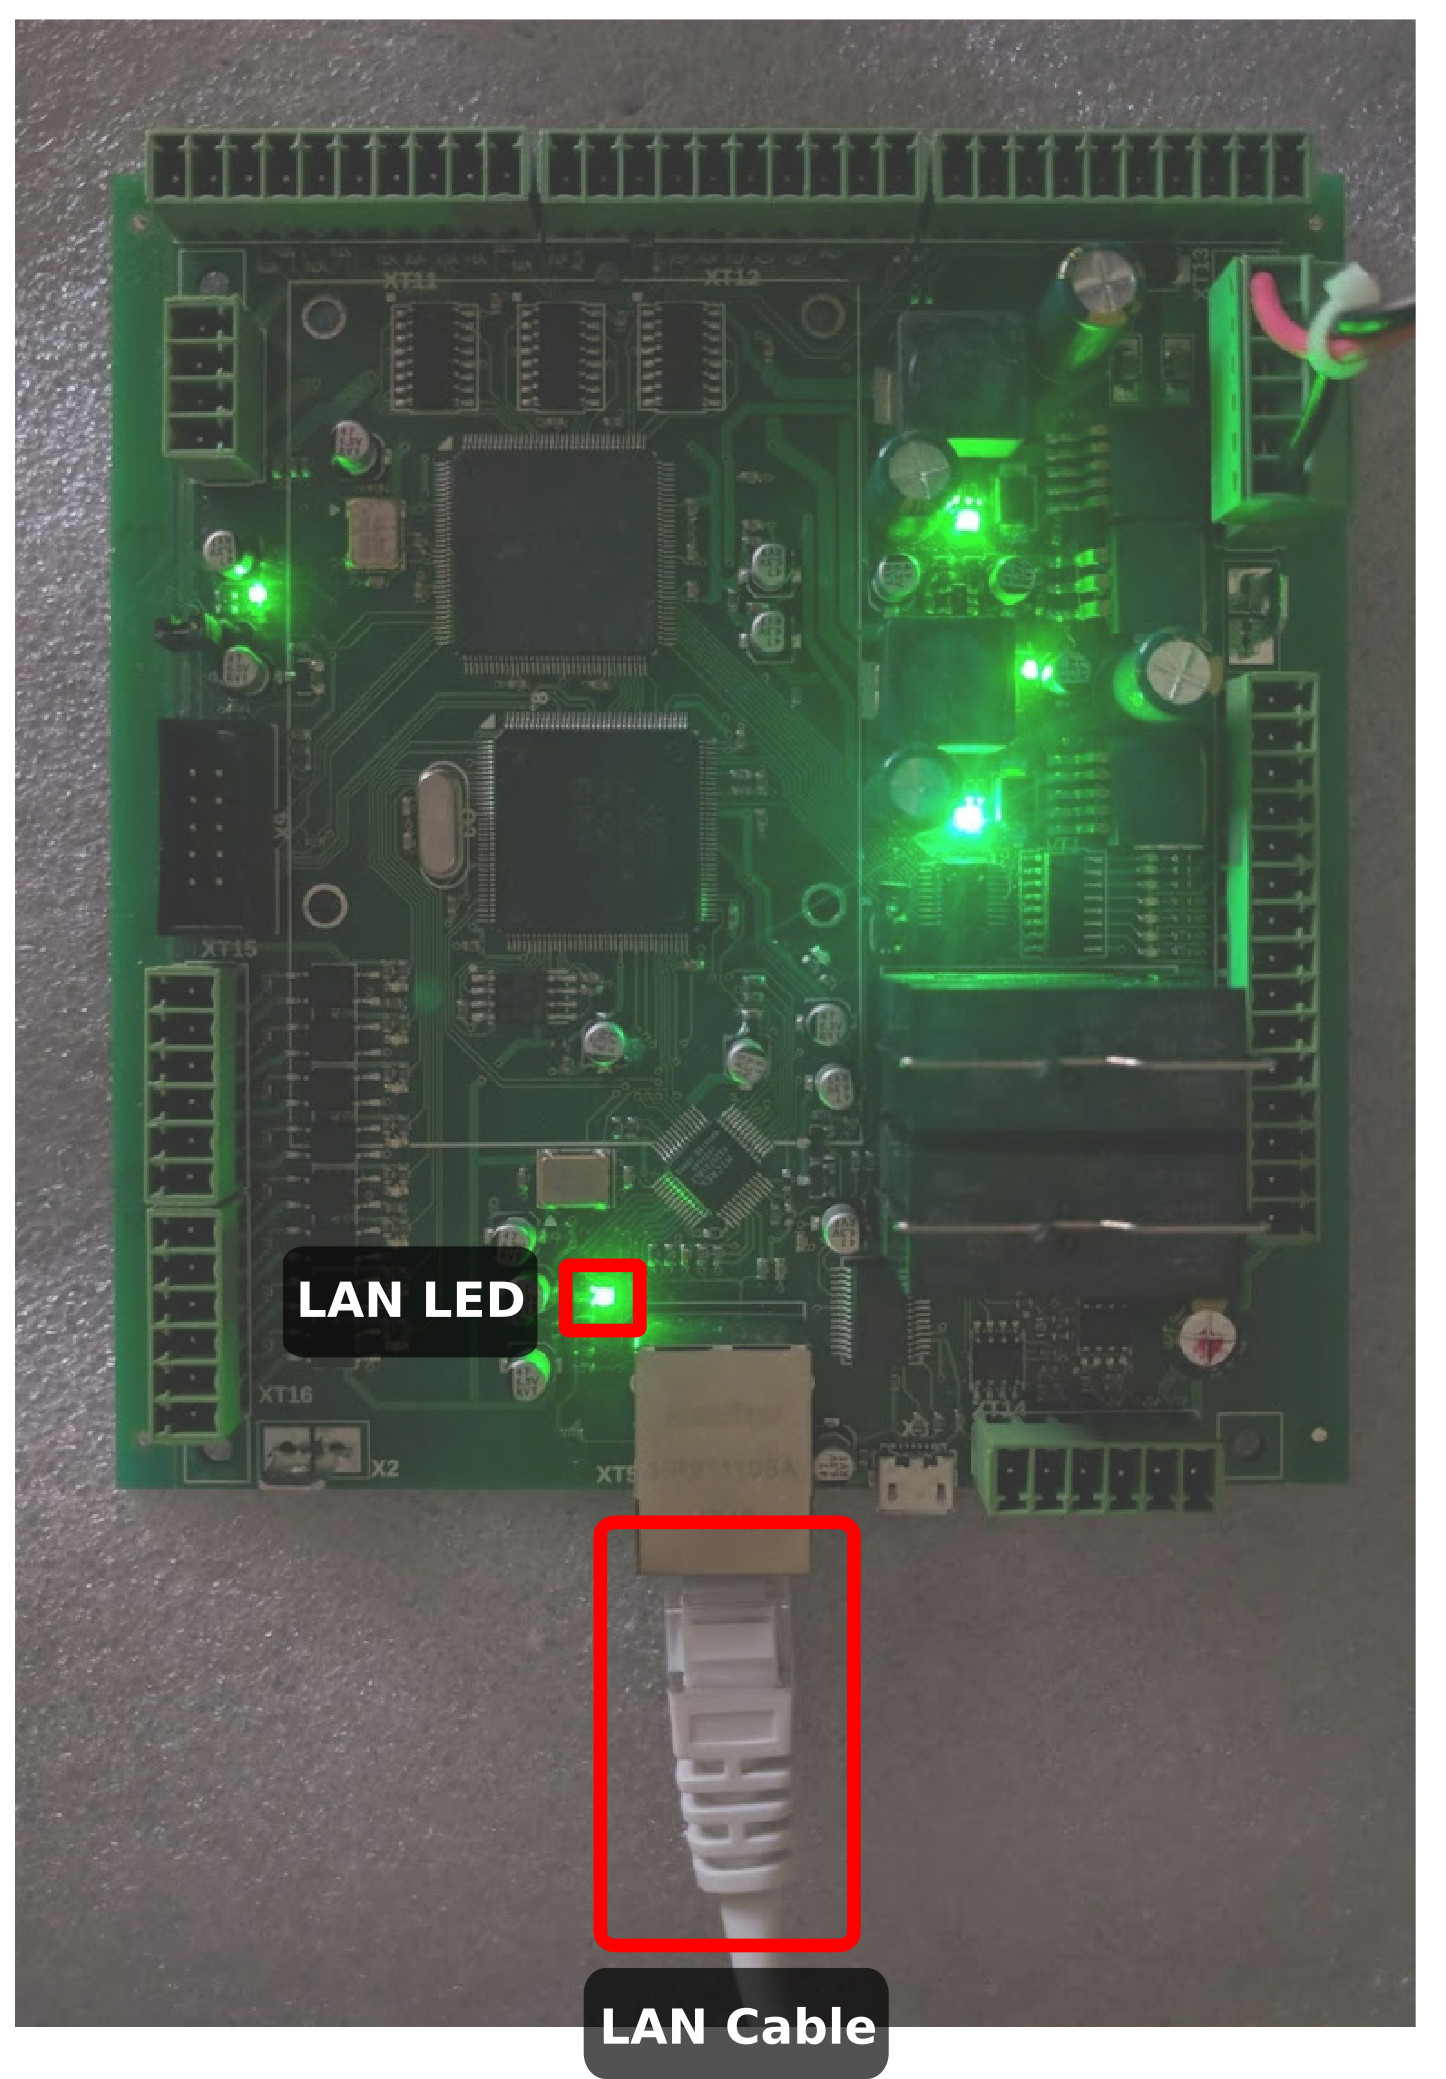 et6-hardware-step2-lan-led-001.jpg